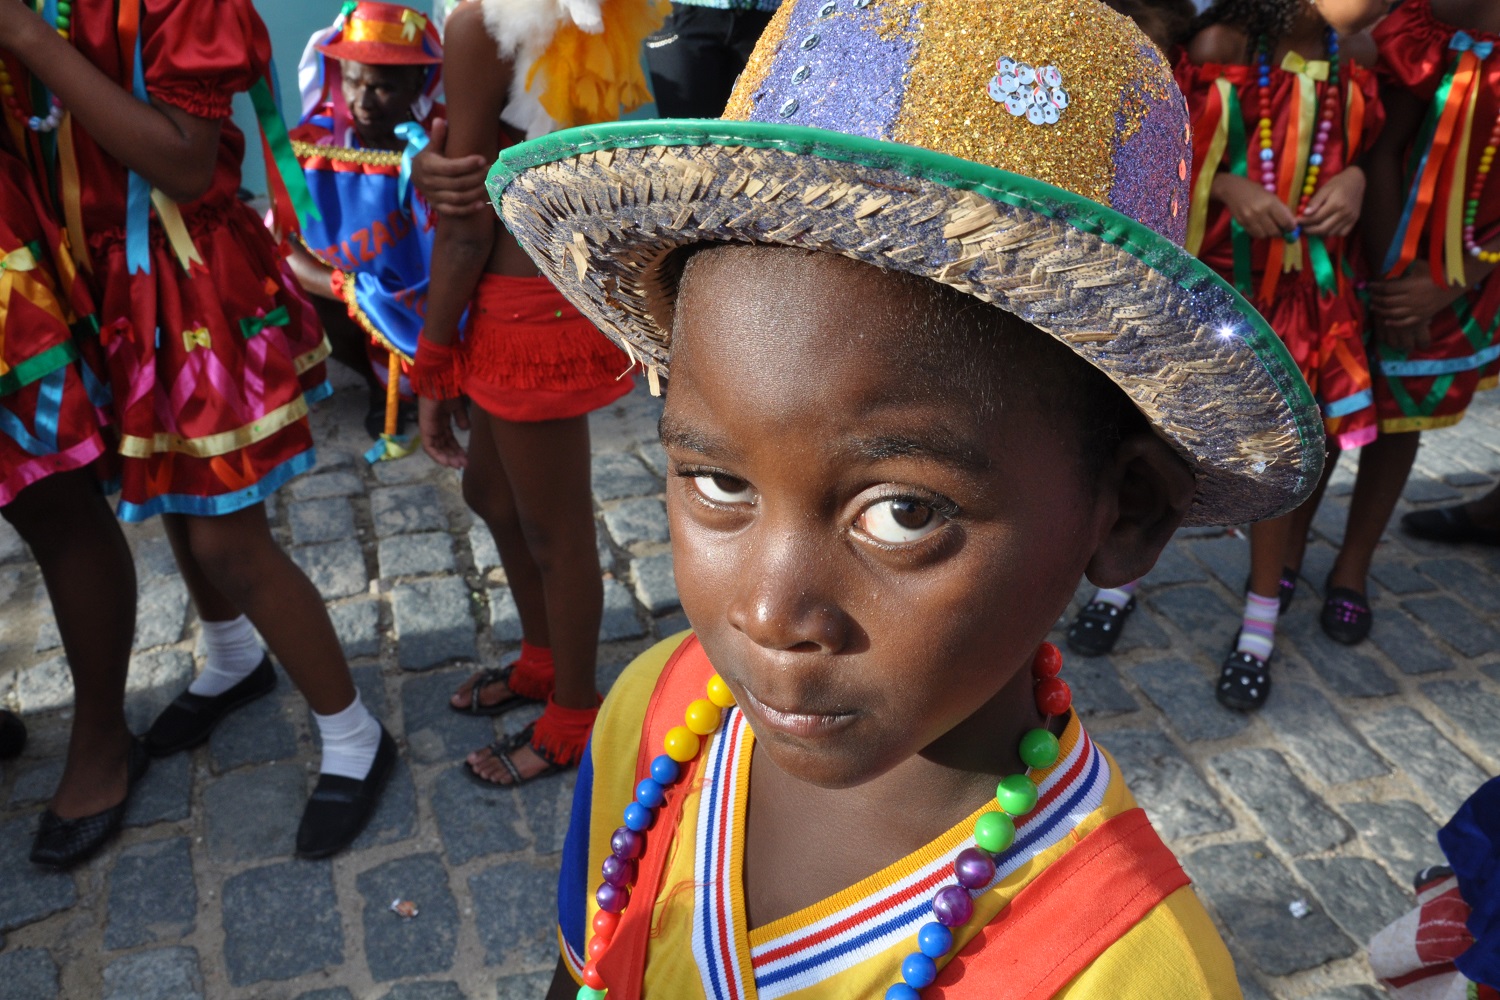 Exposição “Infância, Cultura e Tradição” aborda a presença infantil nas manifestações culturais de Sergipe. (fotos: Mário Garcez)